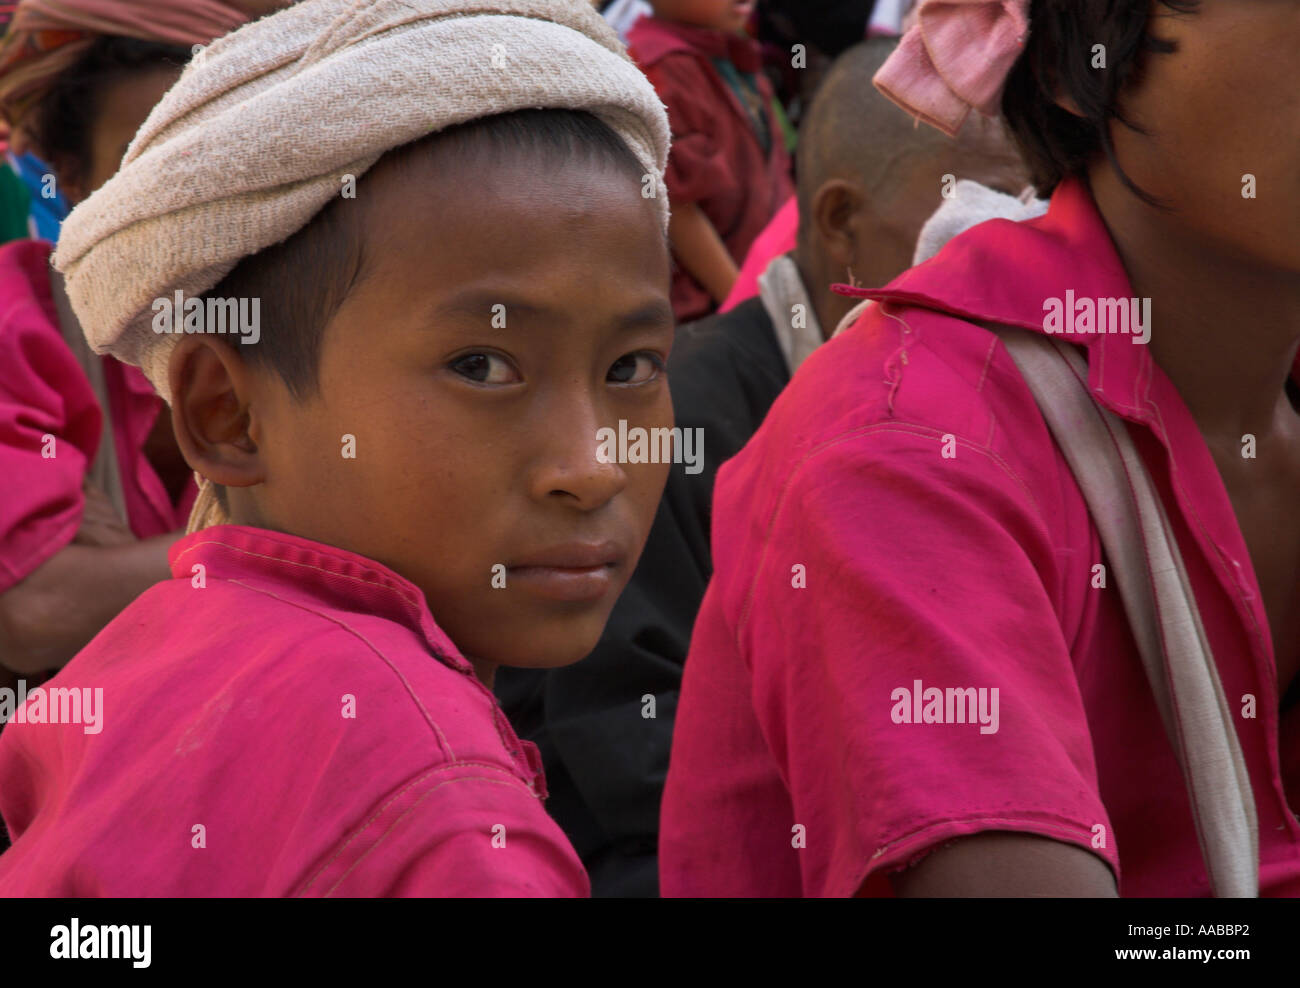 Myanmar Burma Yangon Shwedagon Paya portrait of youngster from ethnic minority wearing pink shirt Stock Photo